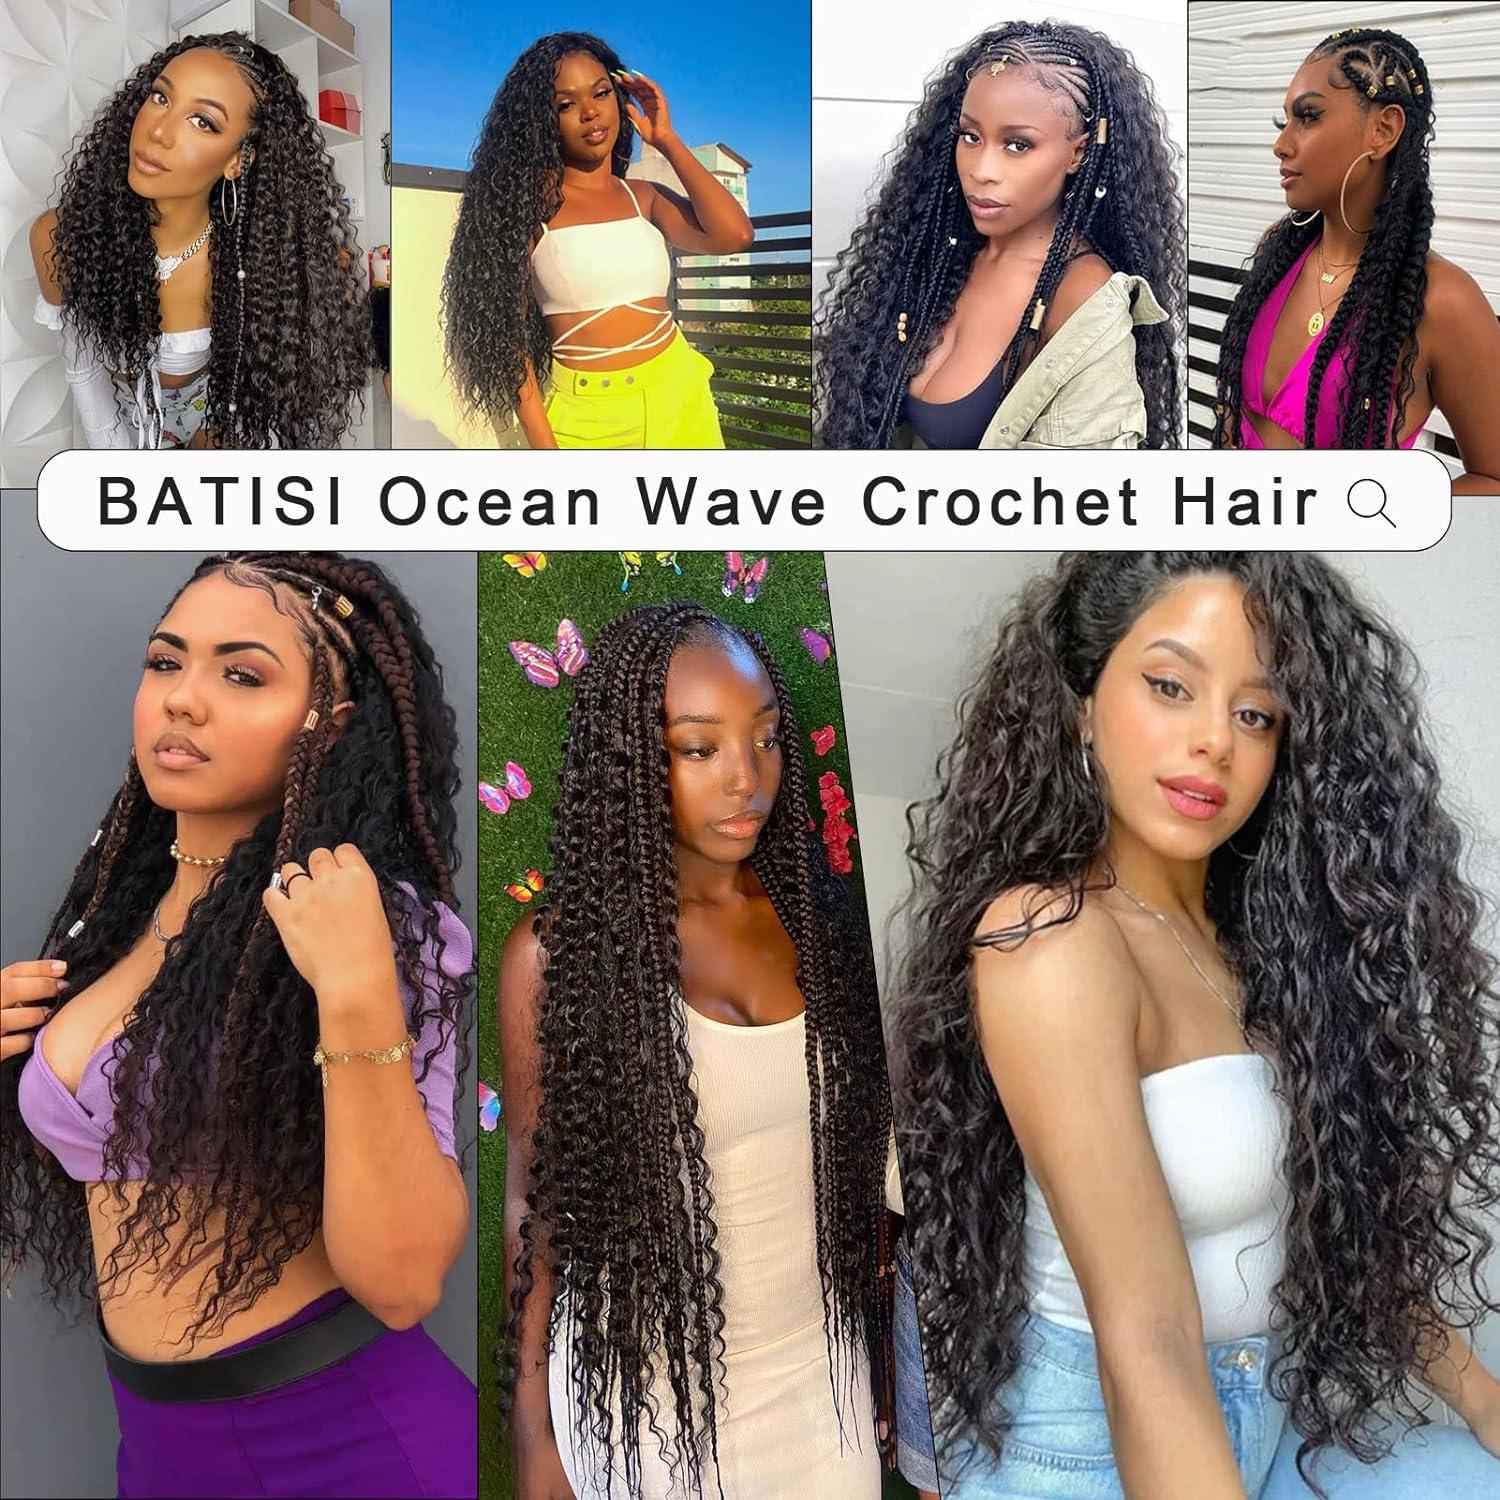 BATISI Ocean Wave Crochet Hair 30 Inch 1 Pack 1b Natural Black